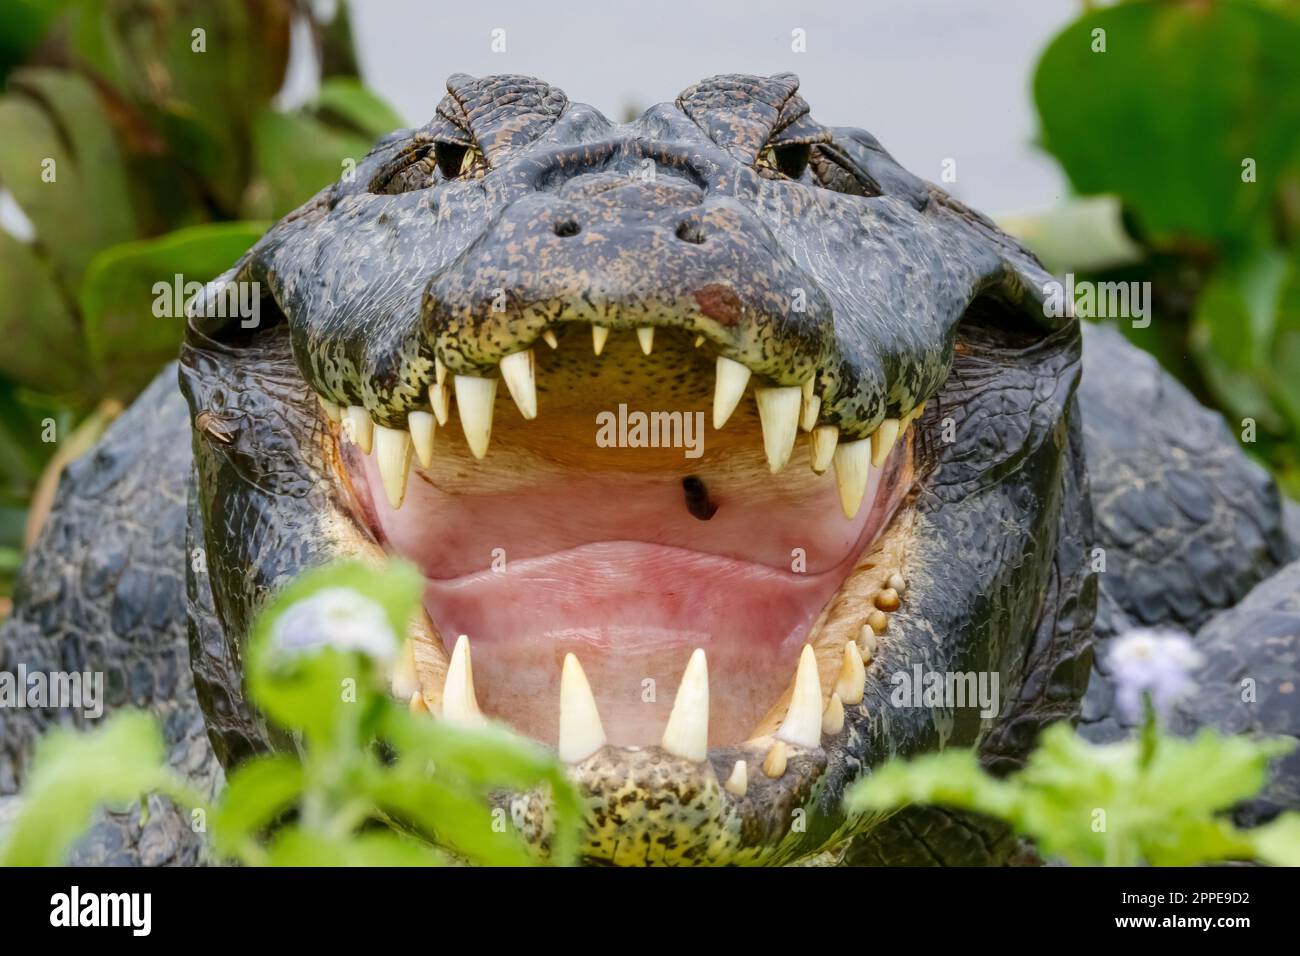 Primo piano vista frontale di un grande Caiman Yacare con bocca aperta e enormi fianches incorniciate da foglie verdi, Pantanal Wetlands, Mato Grosso, Brasile Foto Stock